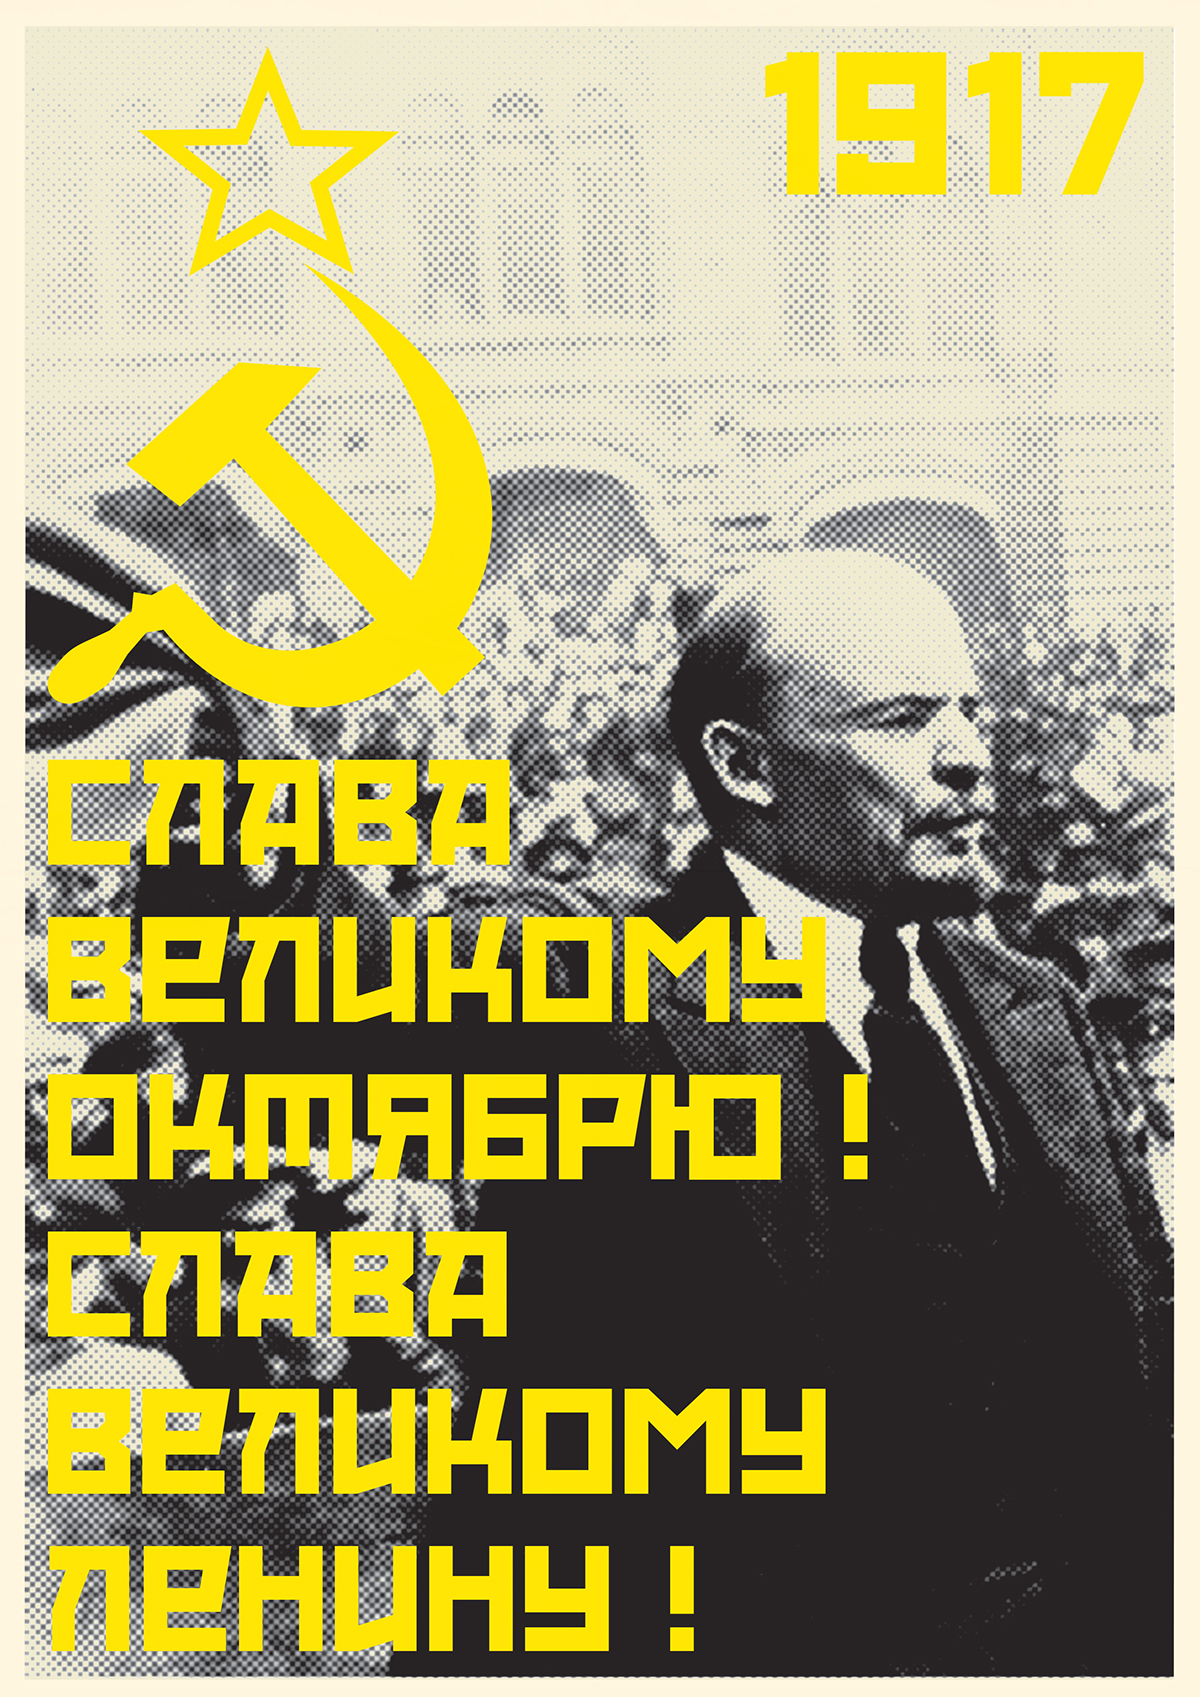 october revolution poster poster Red october SSSR ussr Russia soviet union poster Lenin stalin propaganda poster soviet propaganda poster October Revolution